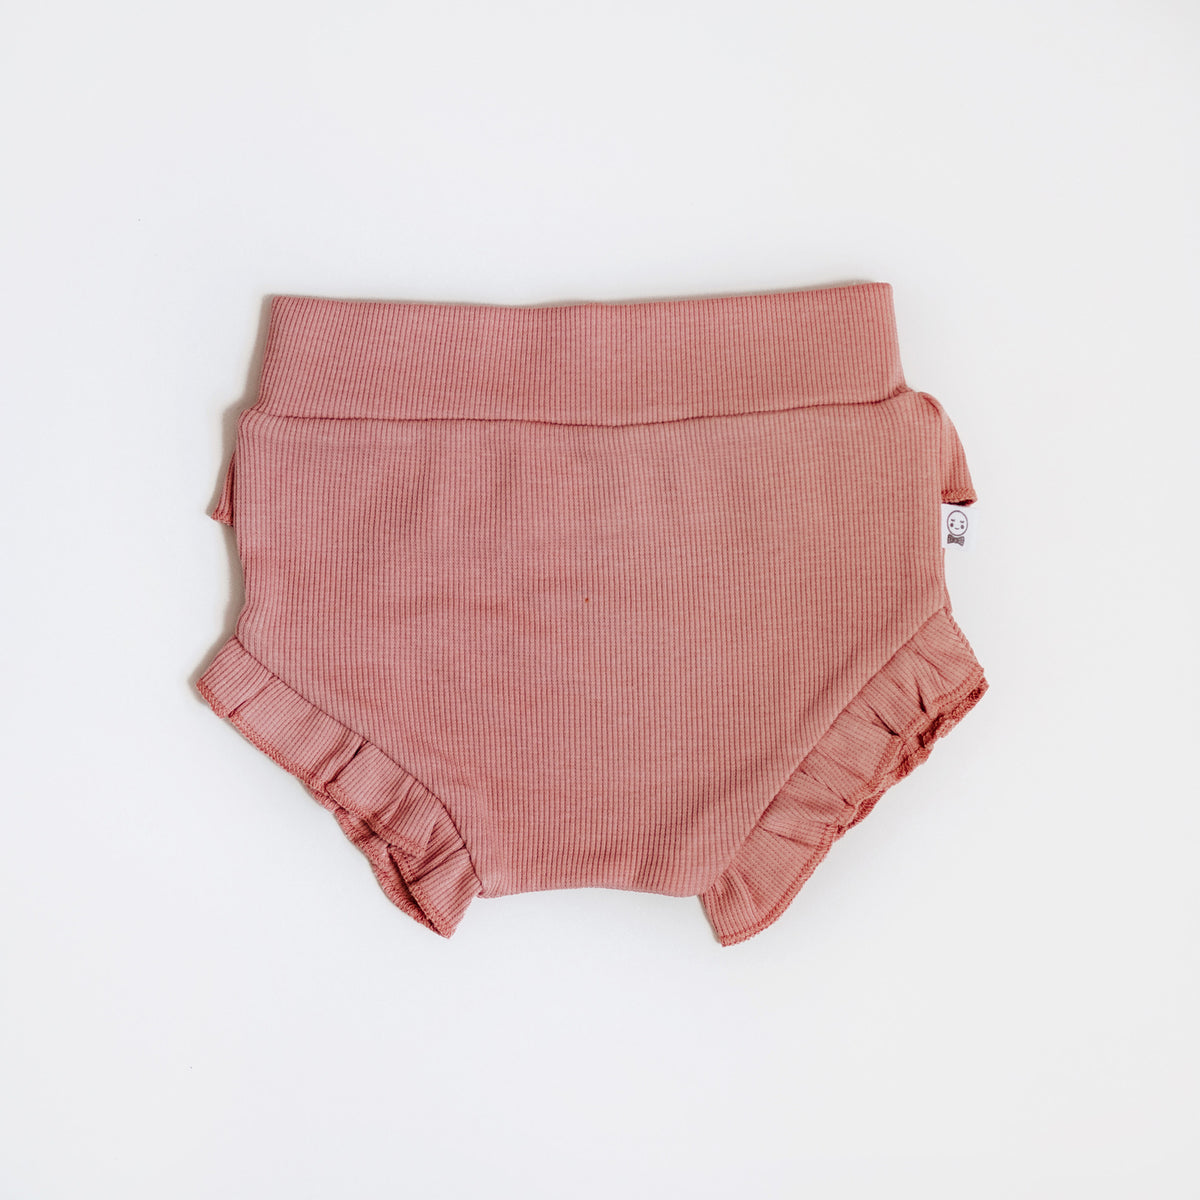 Girls Panties – The Trendy Munchkin